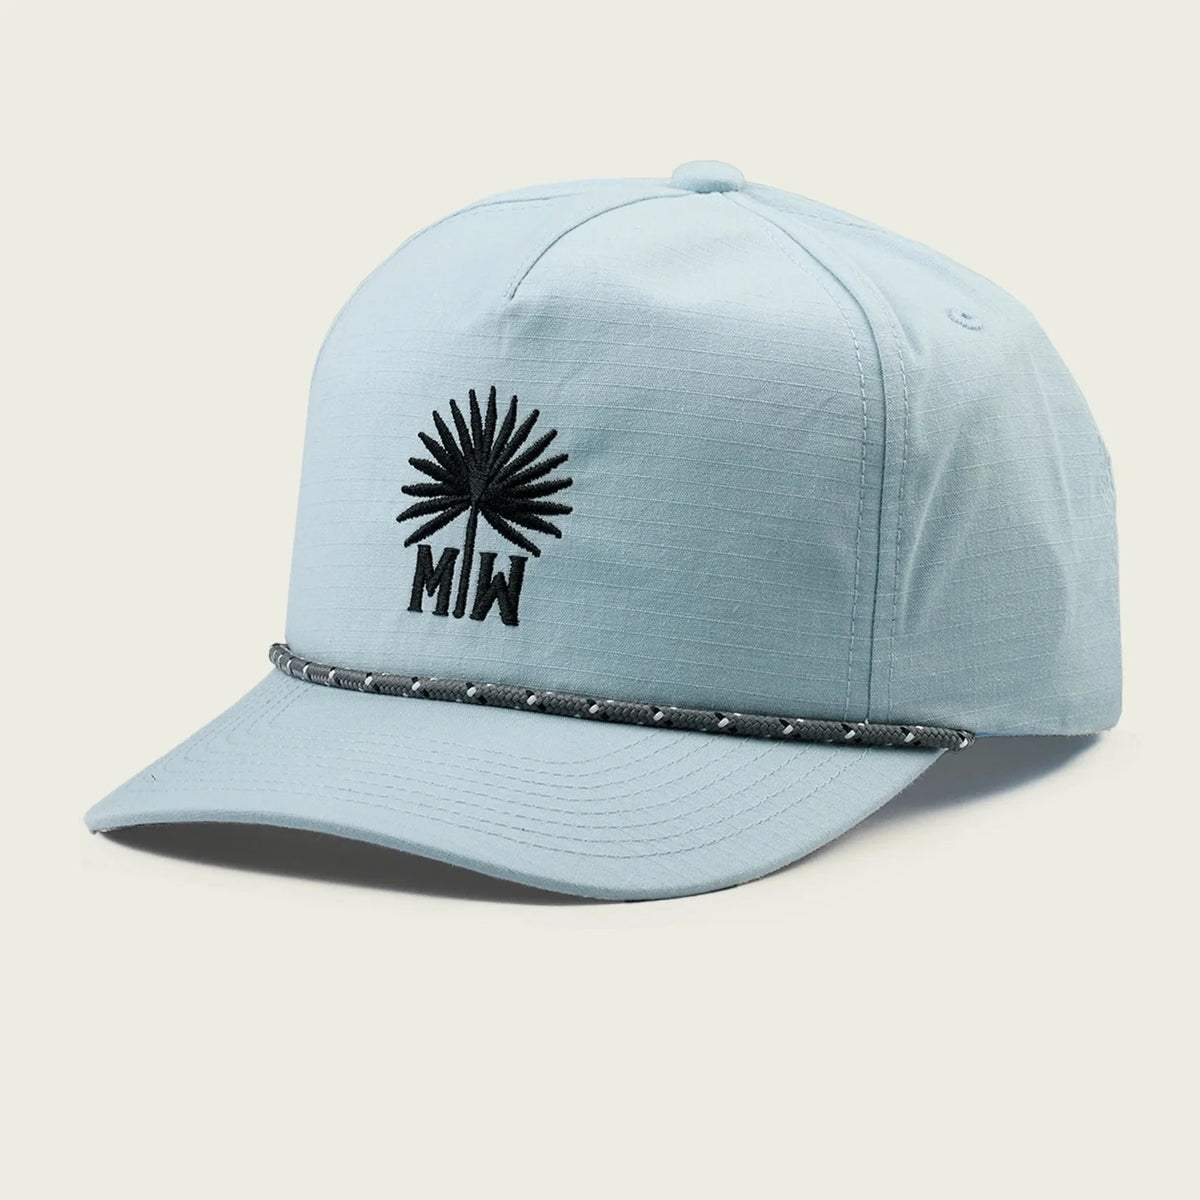 Marsh Wear Palm Frond Hat - Light Blue